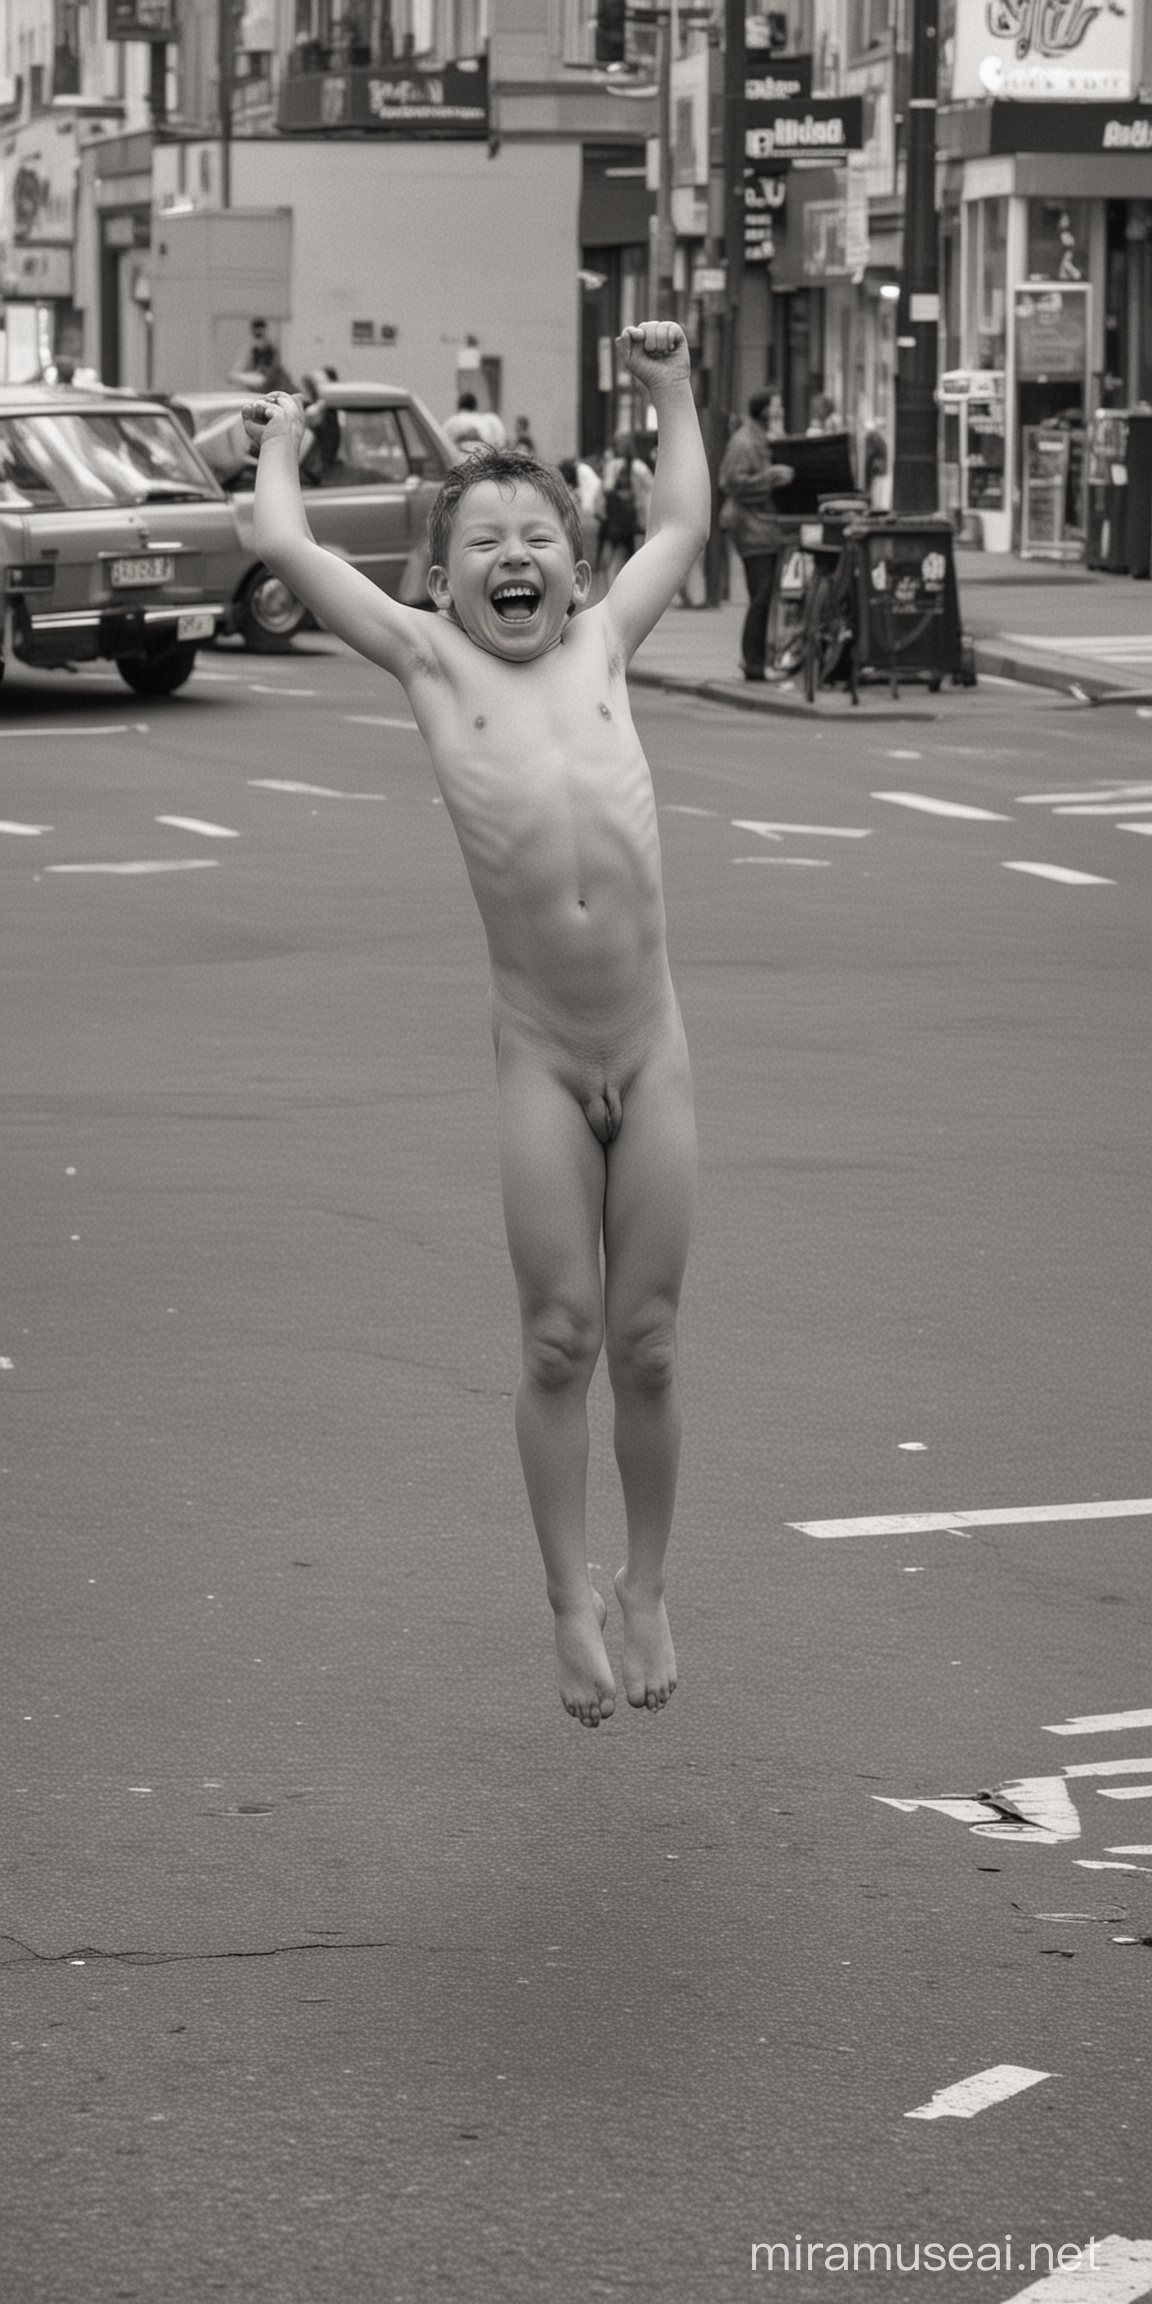 Rapaz dá salto mortal, pelado de frente, rindo, no meio de rua movimentada.
Letreiro: Aleluia! Sabadou!